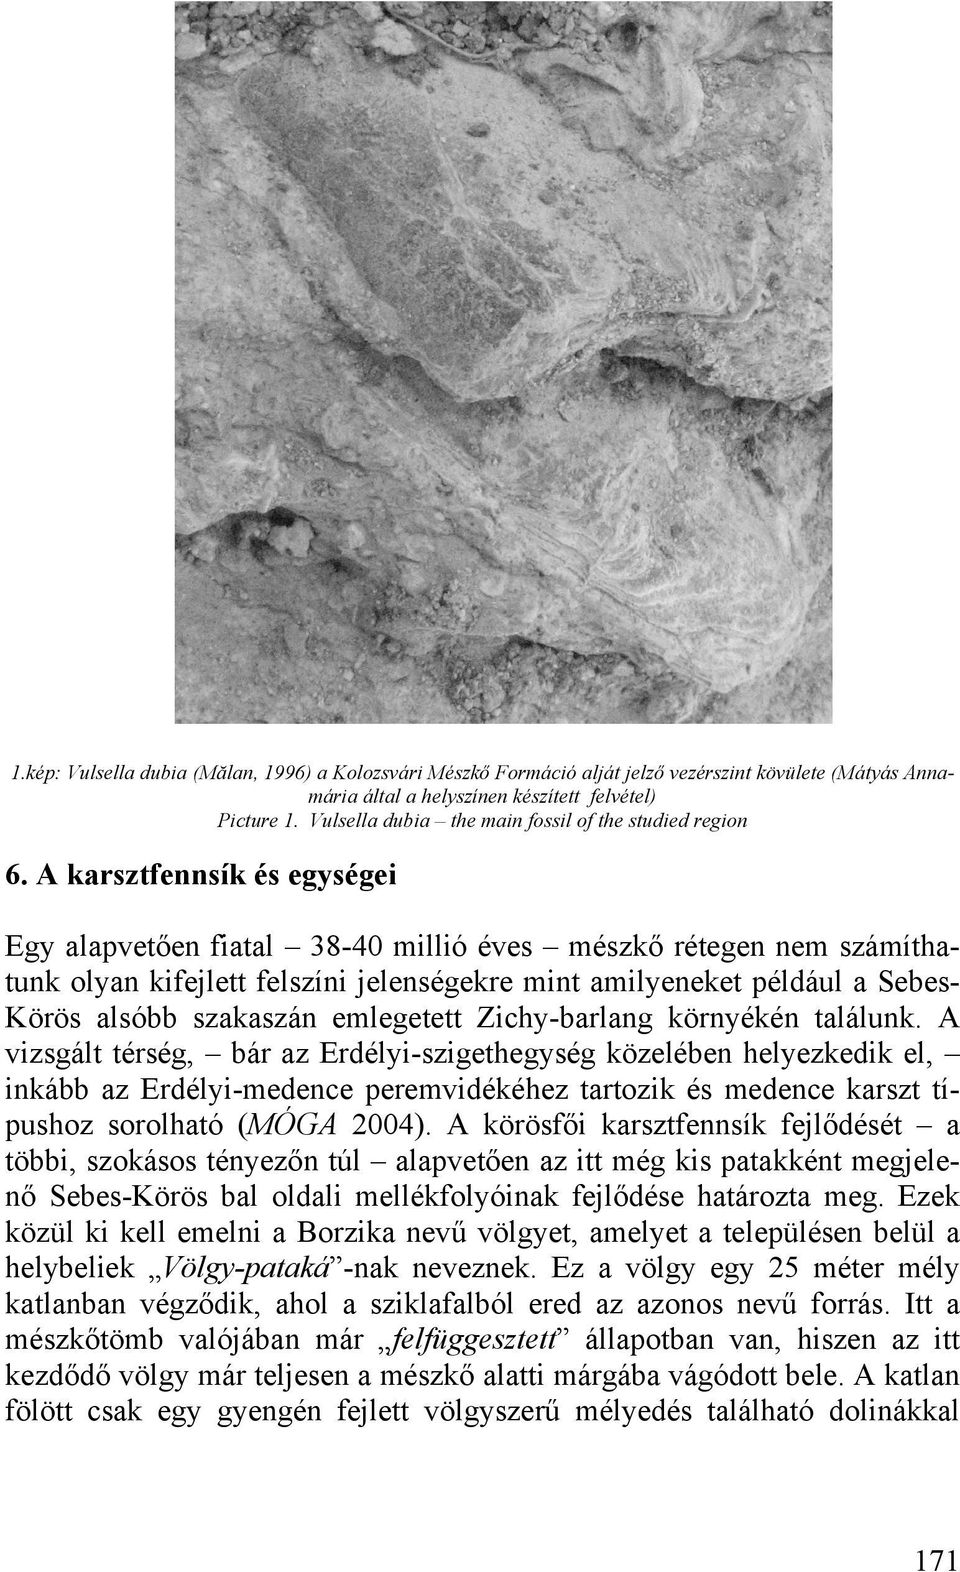 A karsztfennsík és egységei Egy alapvetően fiatal 38-40 millió éves mészkő rétegen nem számíthatunk olyan kifejlett felszíni jelenségekre mint amilyeneket például a Sebes- Körös alsóbb szakaszán